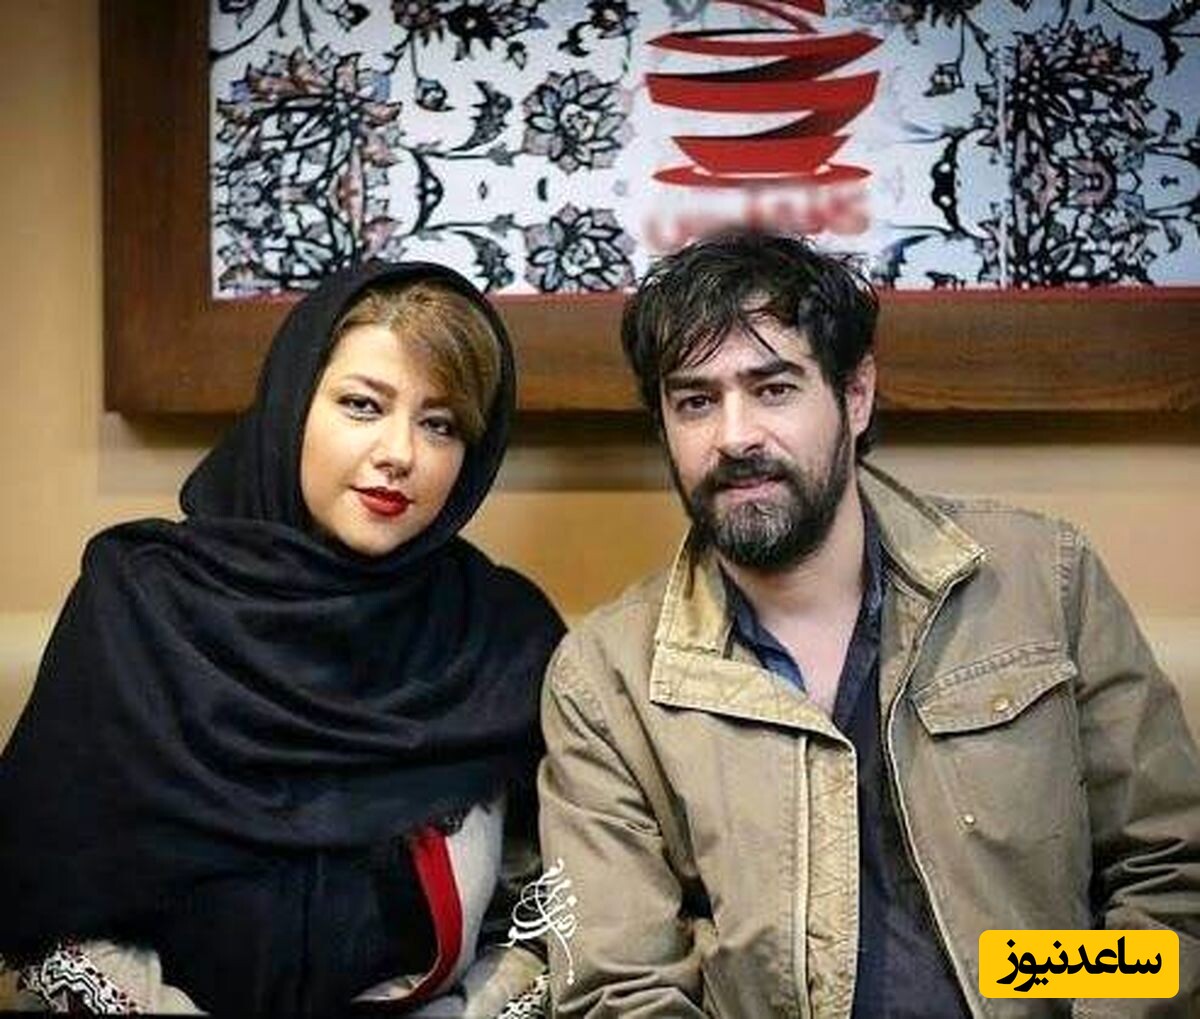 تنها تصویر  شهاب حسینی در اینستاگرام همسر اولش که هنوز پریچهر قنبری اونو حذف نکرده +عکس